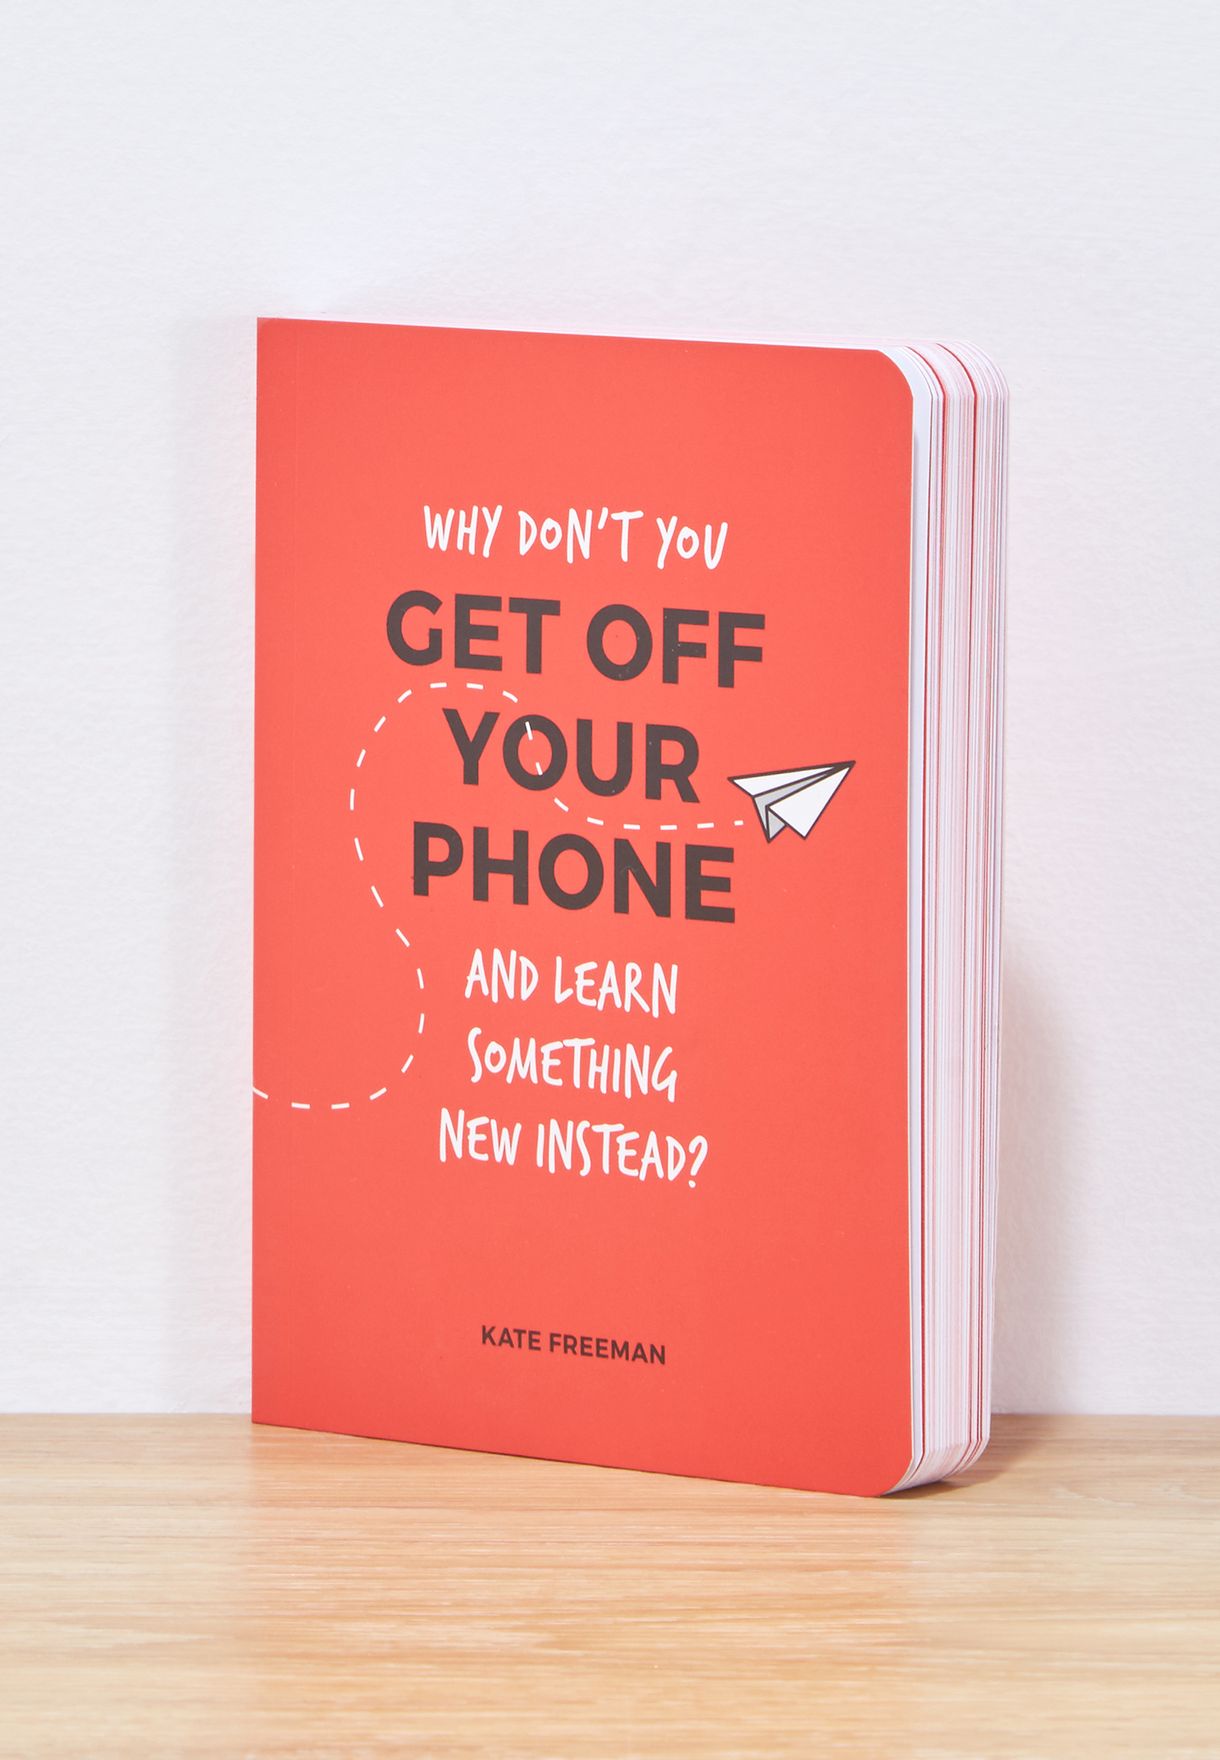 كتاب "لماذا لا تترك هاتفك وتتعلم شيئا جديدا؟"